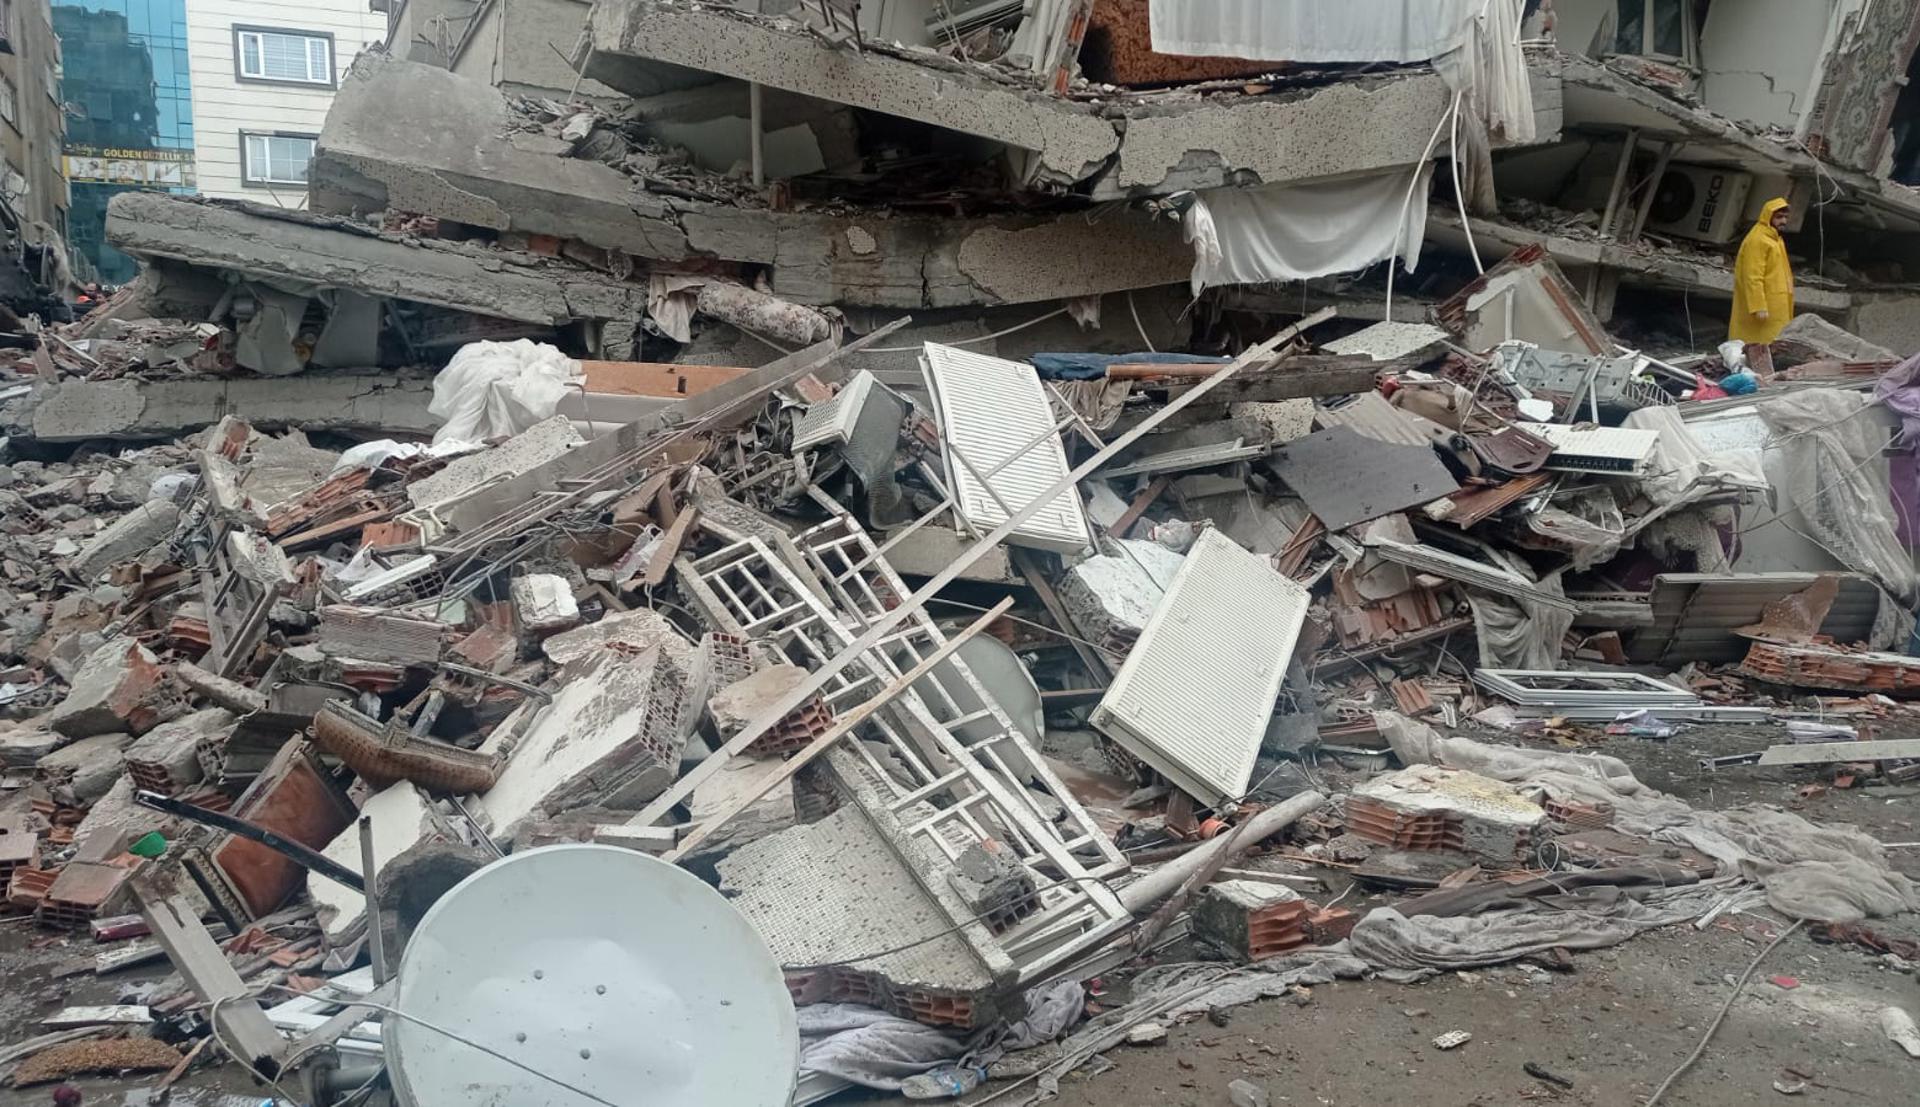 Numerosos deportistas turcos se encuentran bajo los escombros tras el sismo